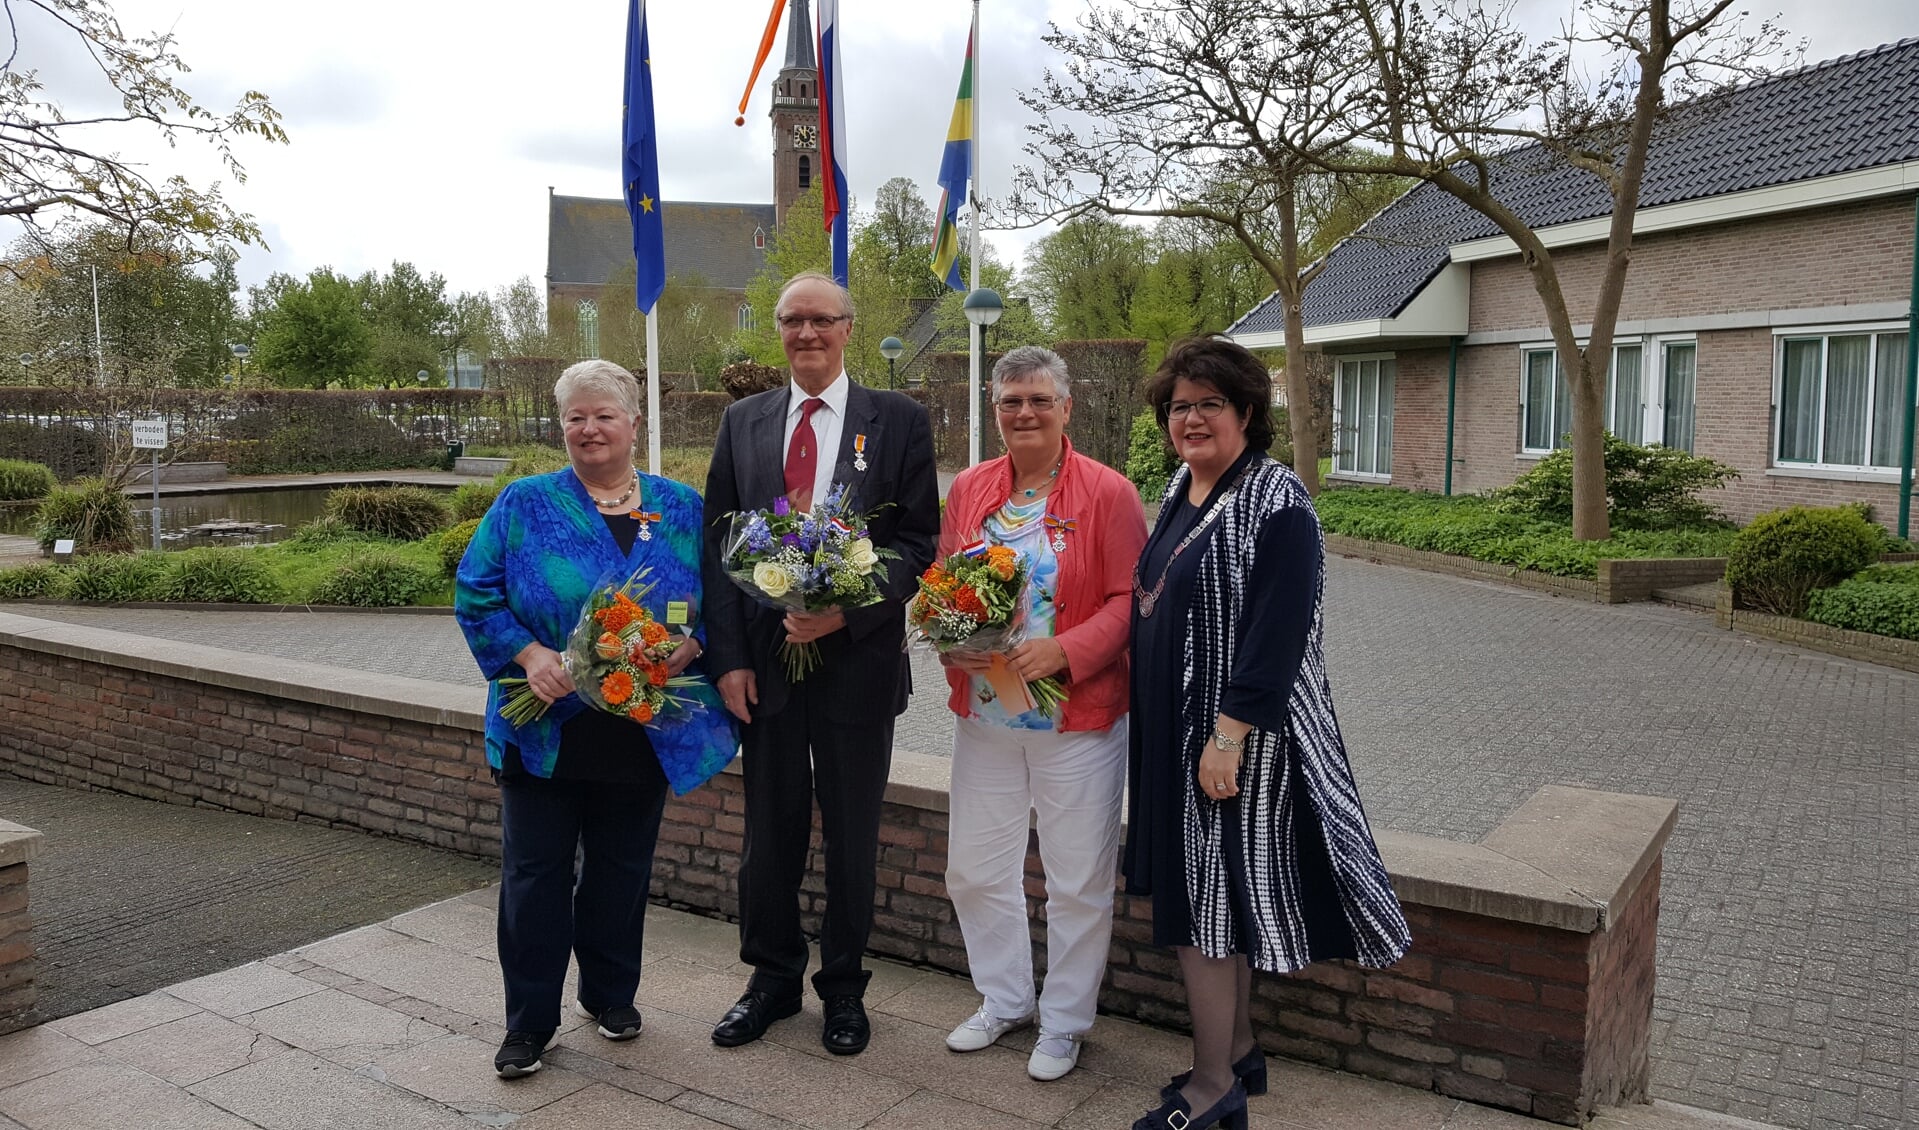 V.l.n.r. Hilda Reijm-Helder, Henk van der Molen, Ria Duijn-Van Beusekom en burgemeester Joyce van Beek. (Foto: gemeente Beemster)